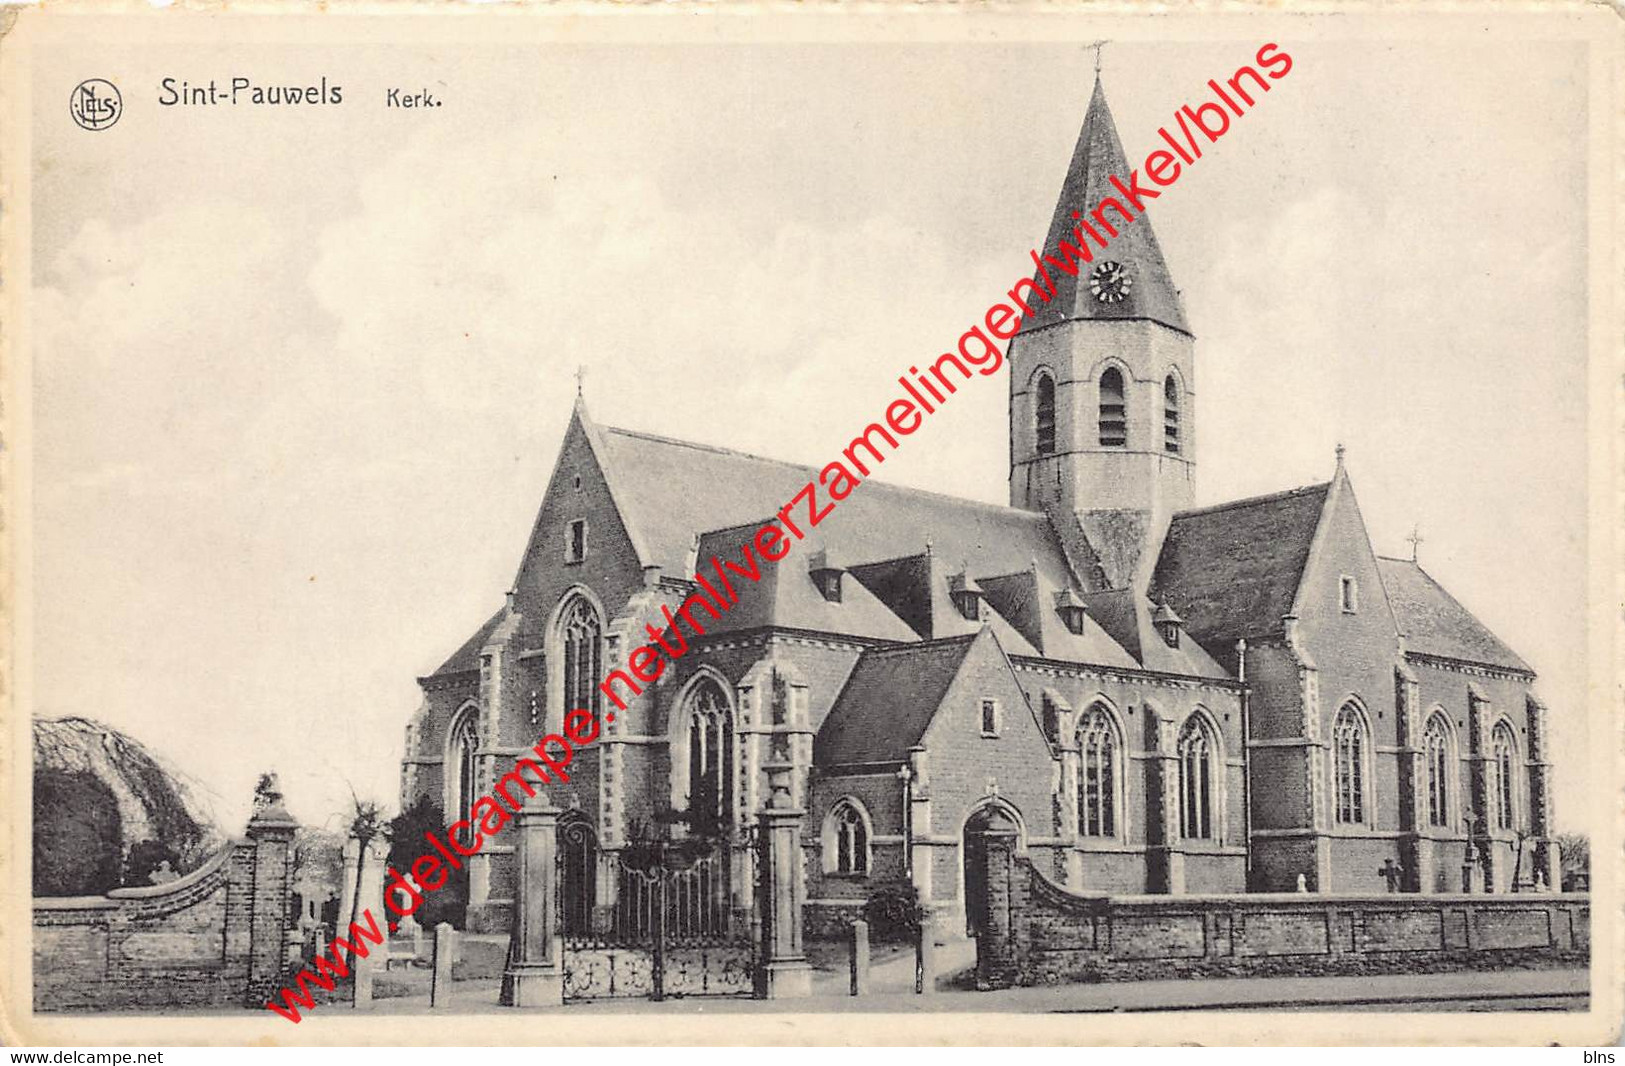 Kerk - Sint-Pauwels - Sint-Gillis-Waas